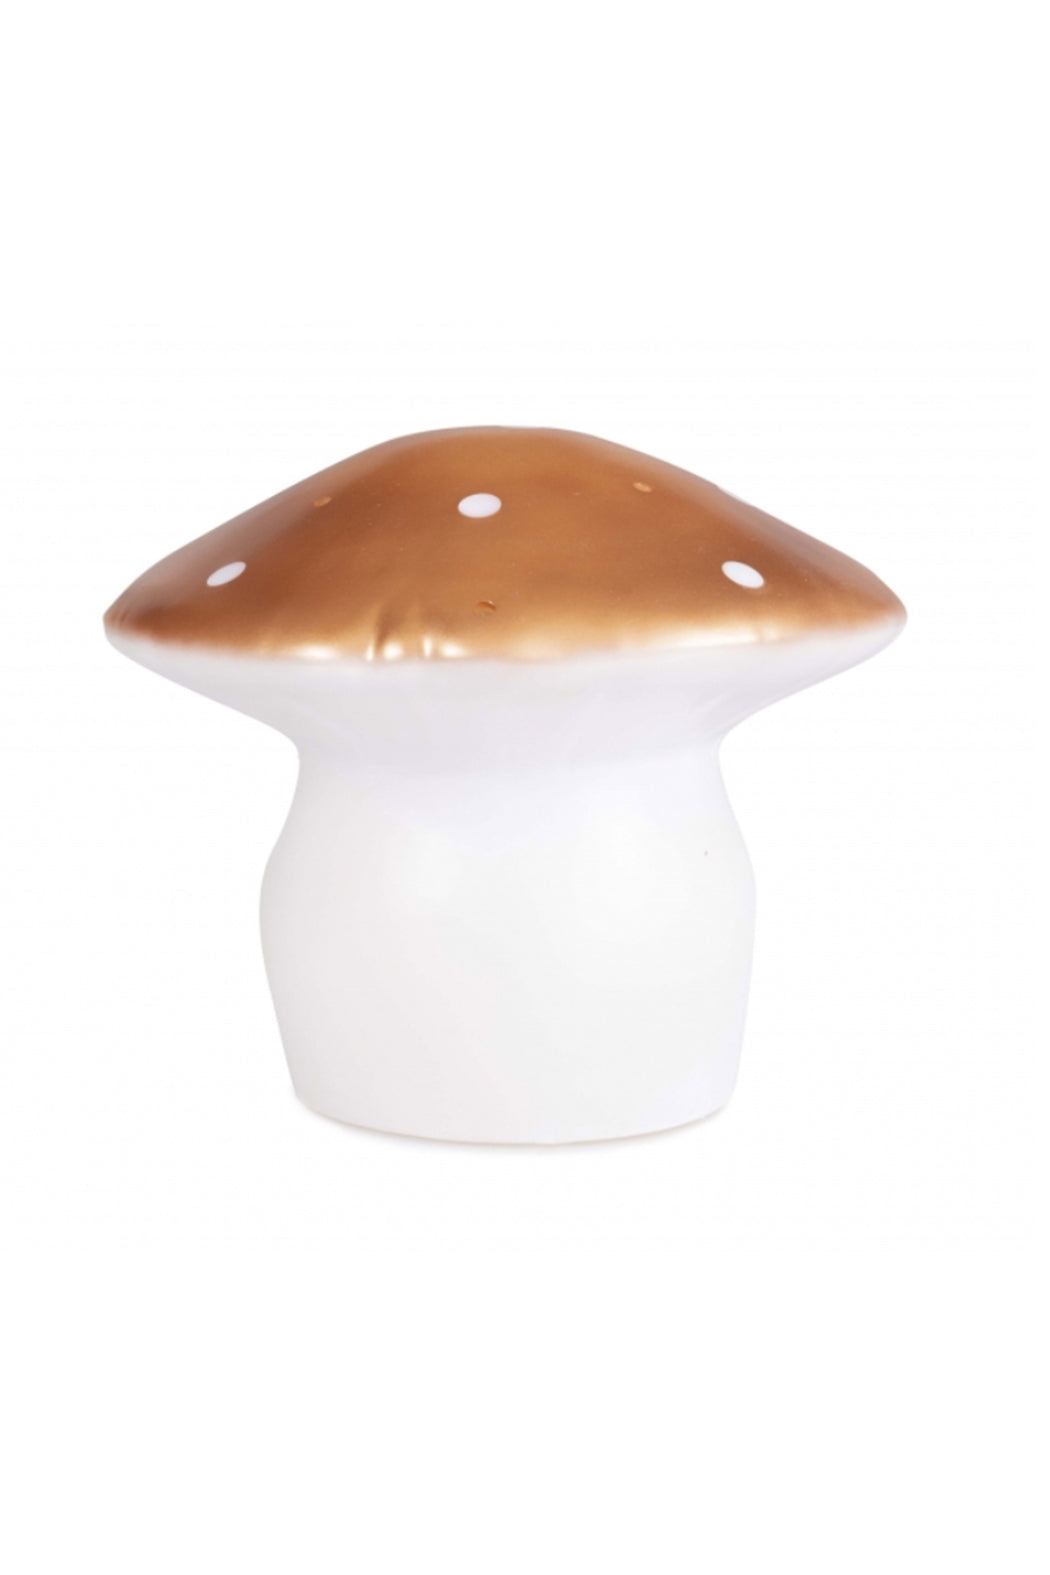 Egmont Toys Big Mushroom Lamp - Copper